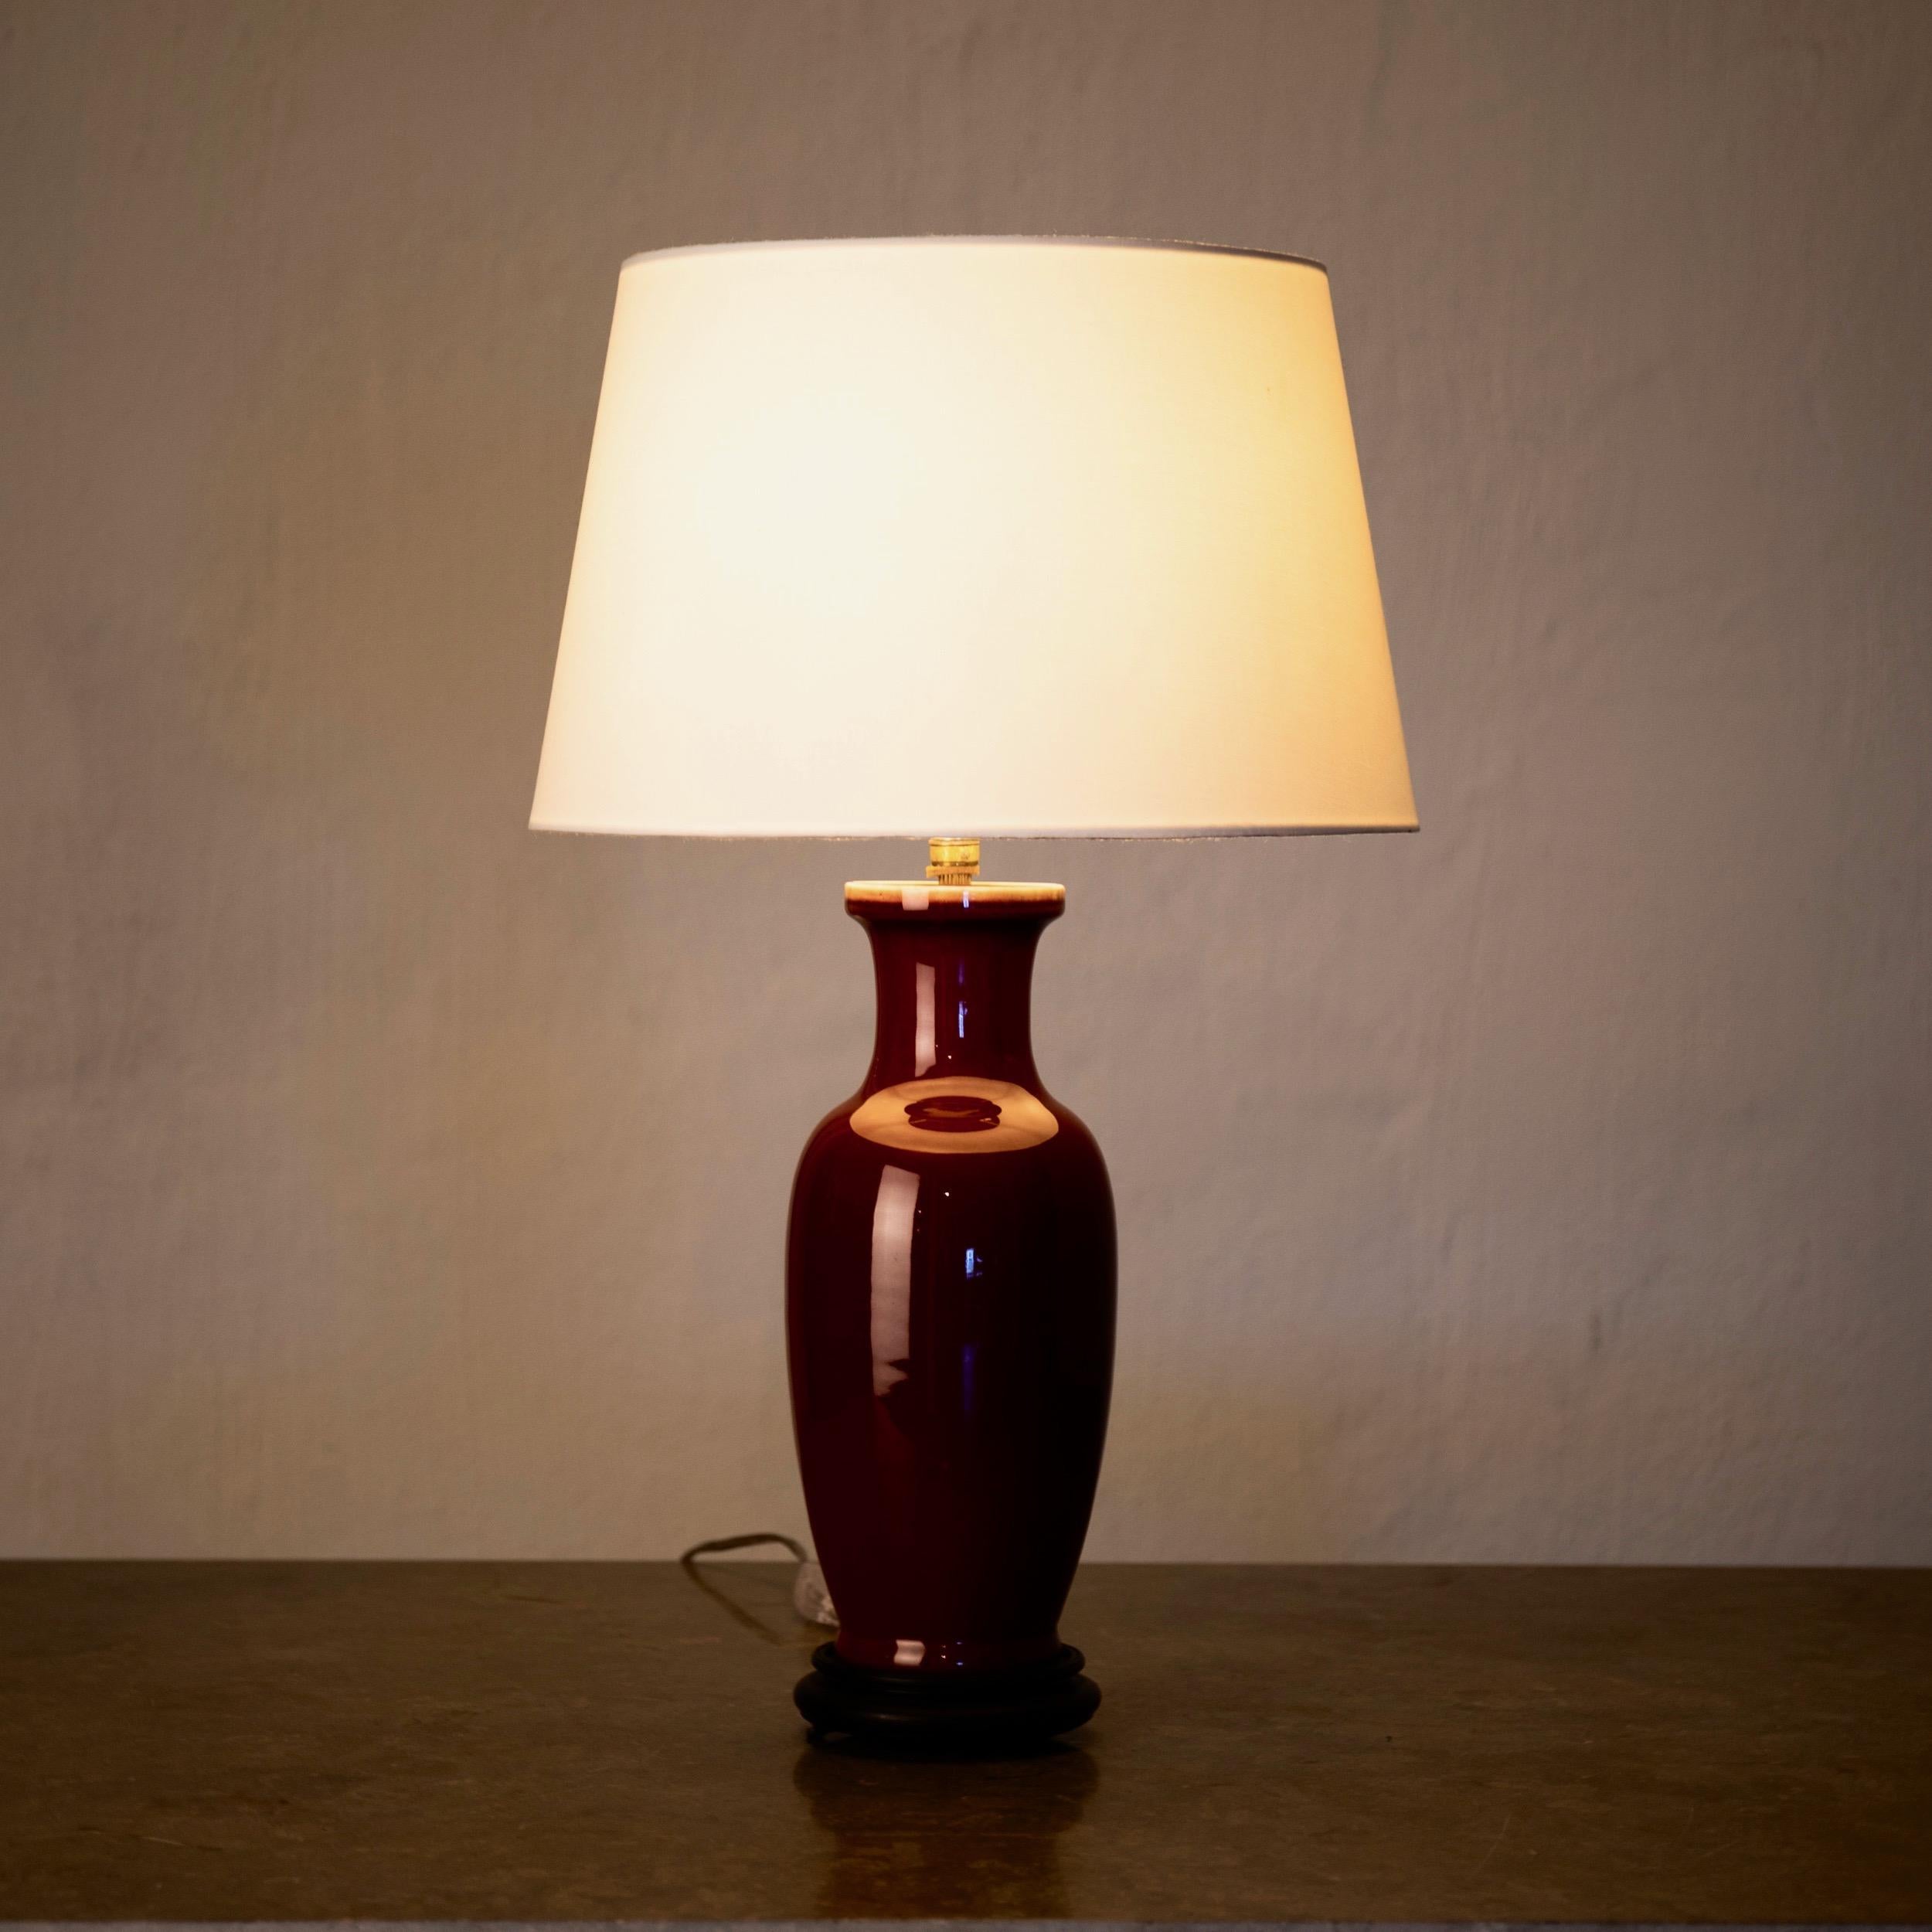 Tischlampe glasiert rot 19. Jahrhundert, China. Eine Tischlampe aus tiefrot glasierter Keramik.
Maße: H mit Schirm: 22,5